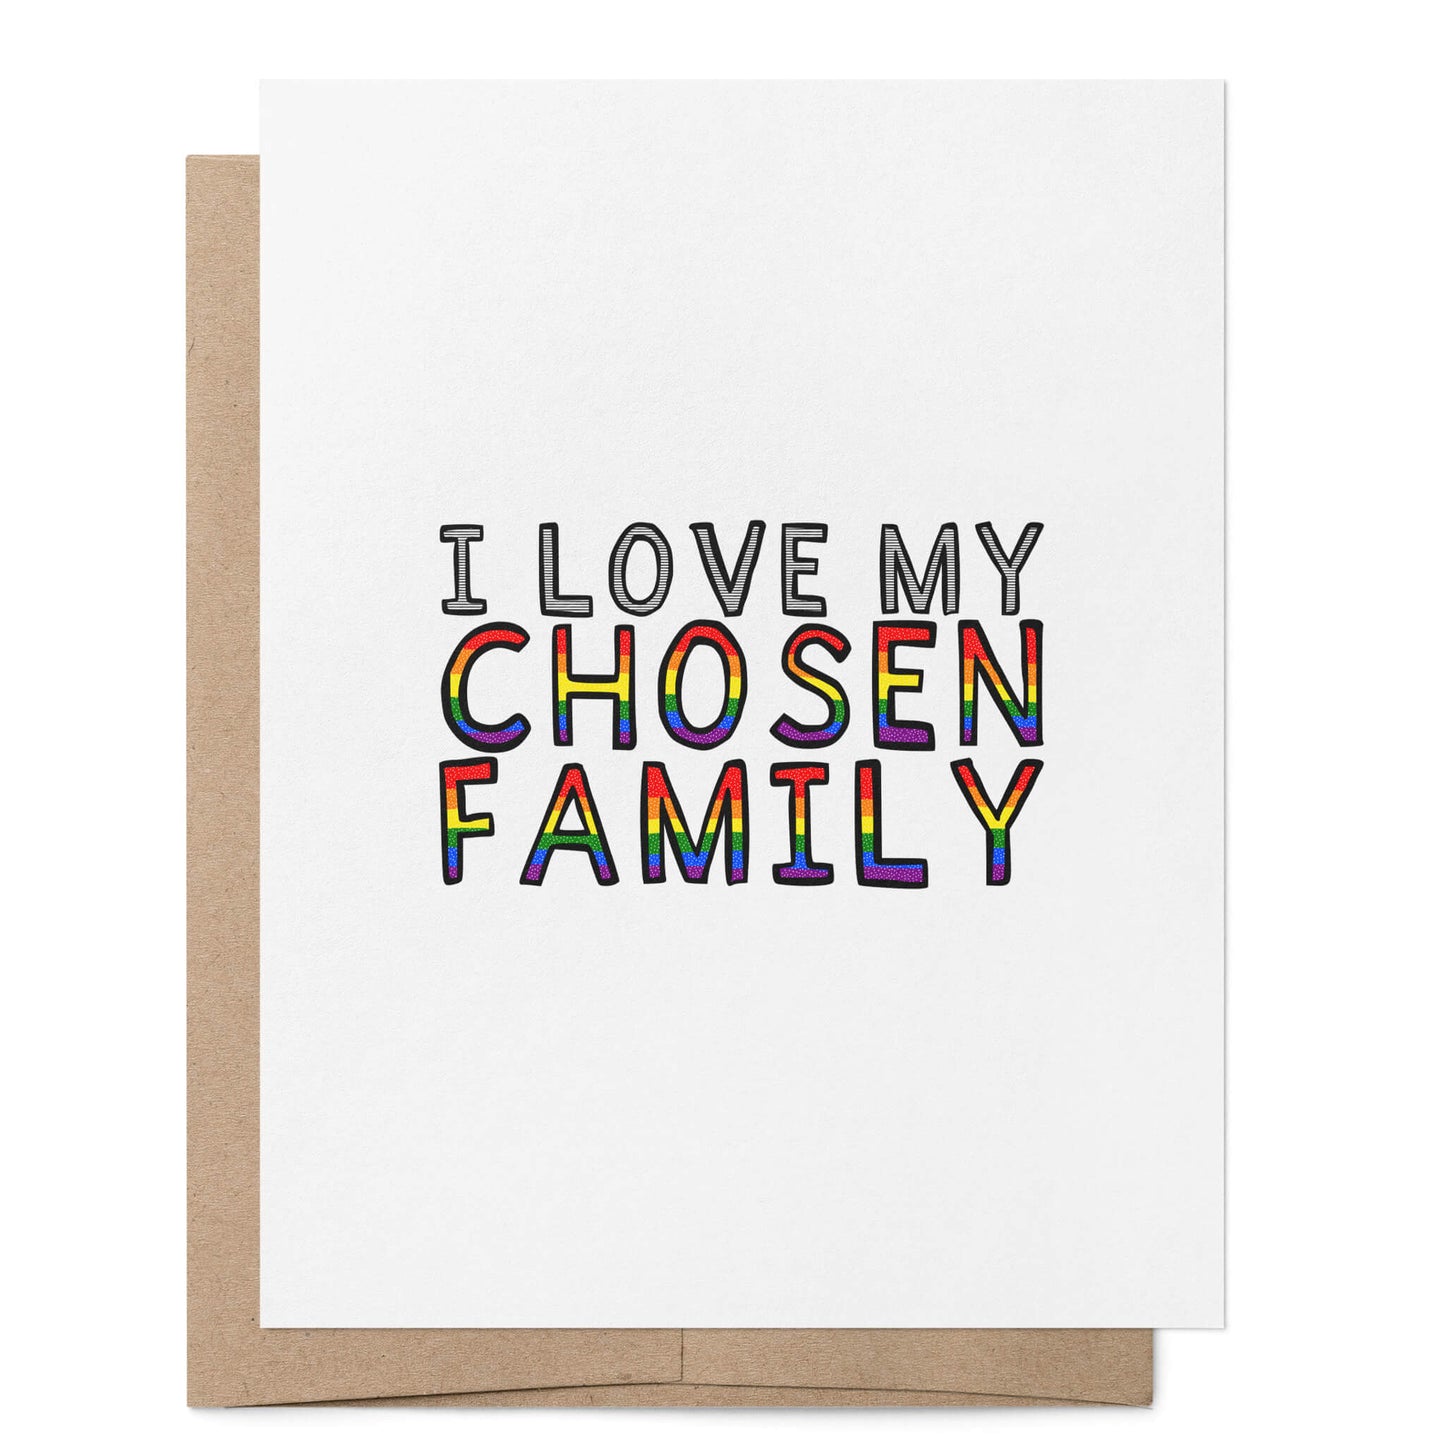 I Love My Chosen Family Card